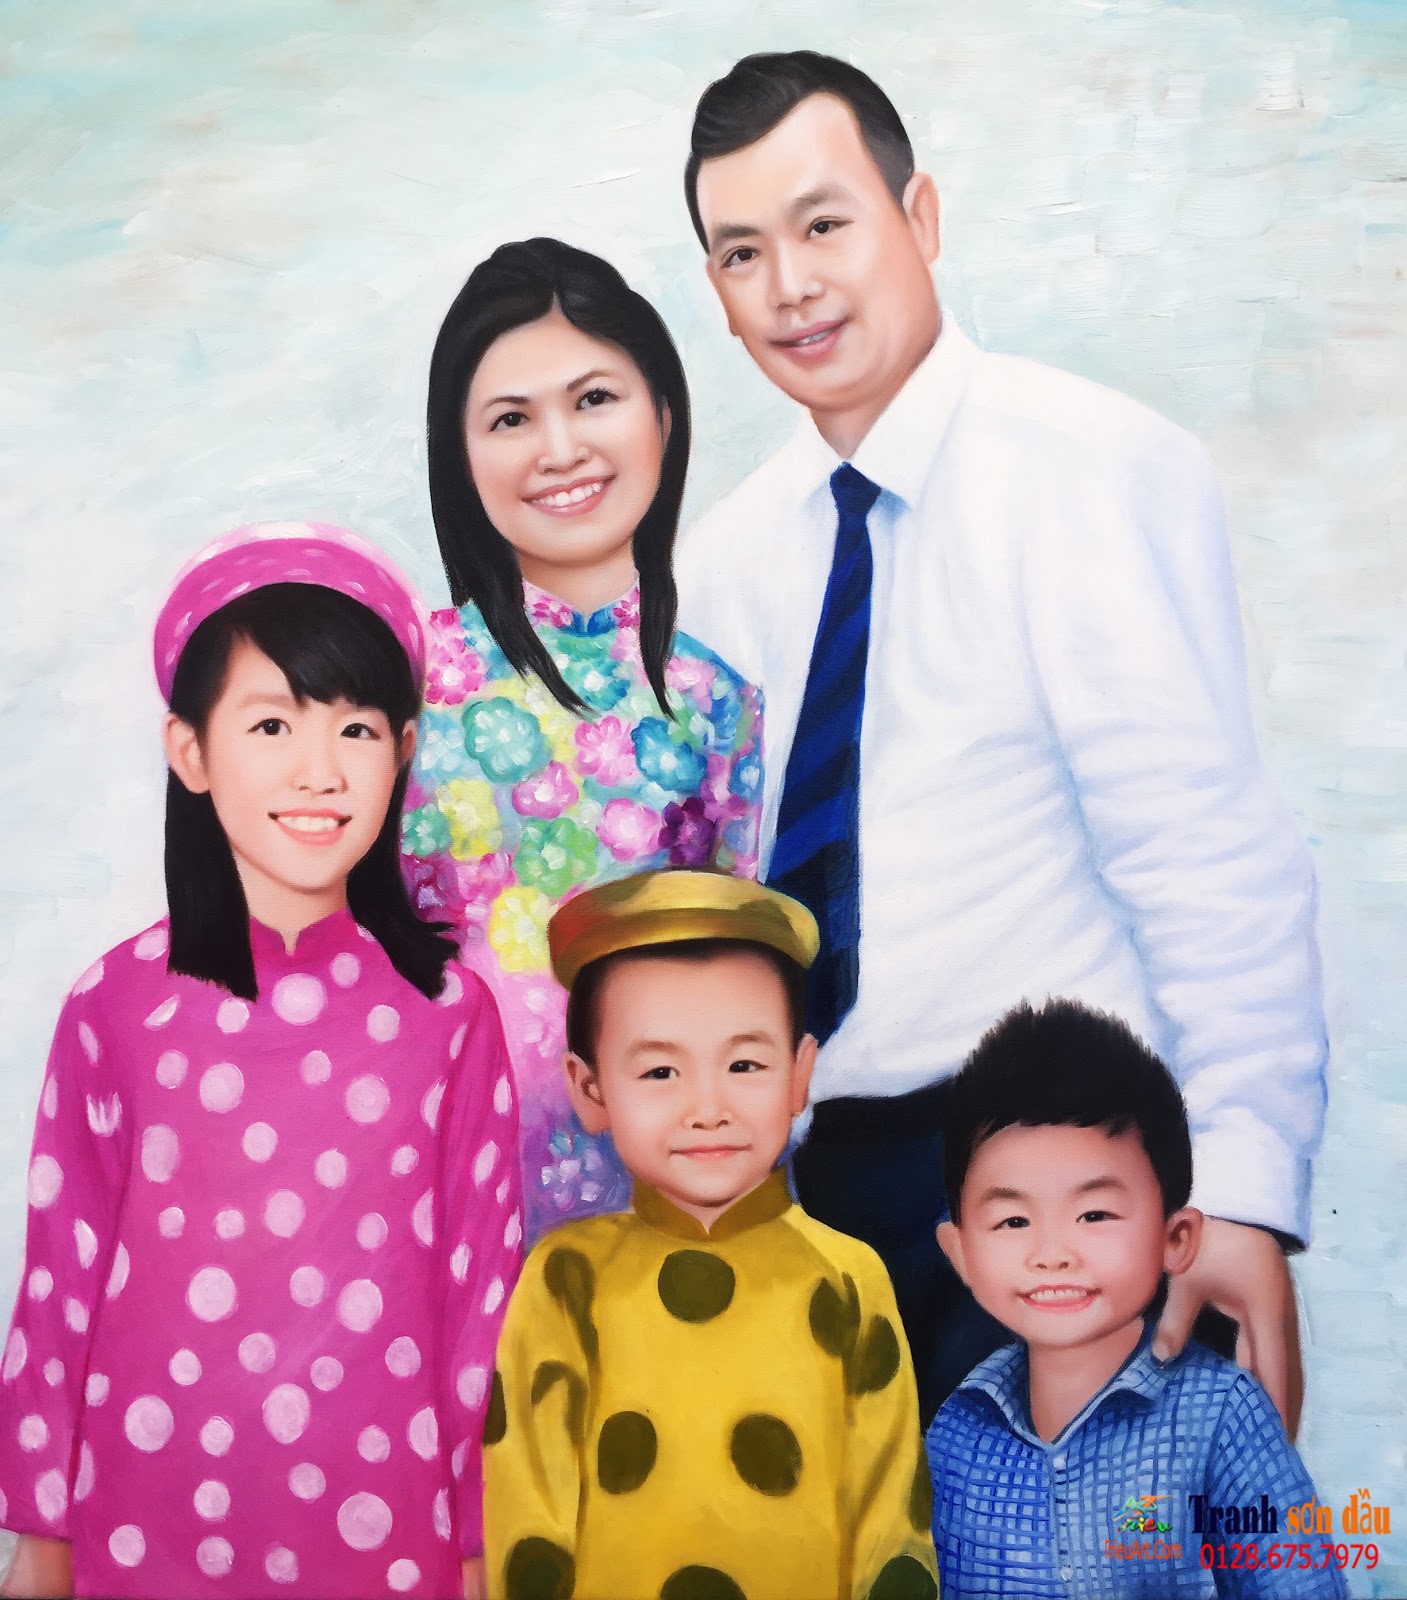 vẽ chân dung gia đình theo yêu cầu